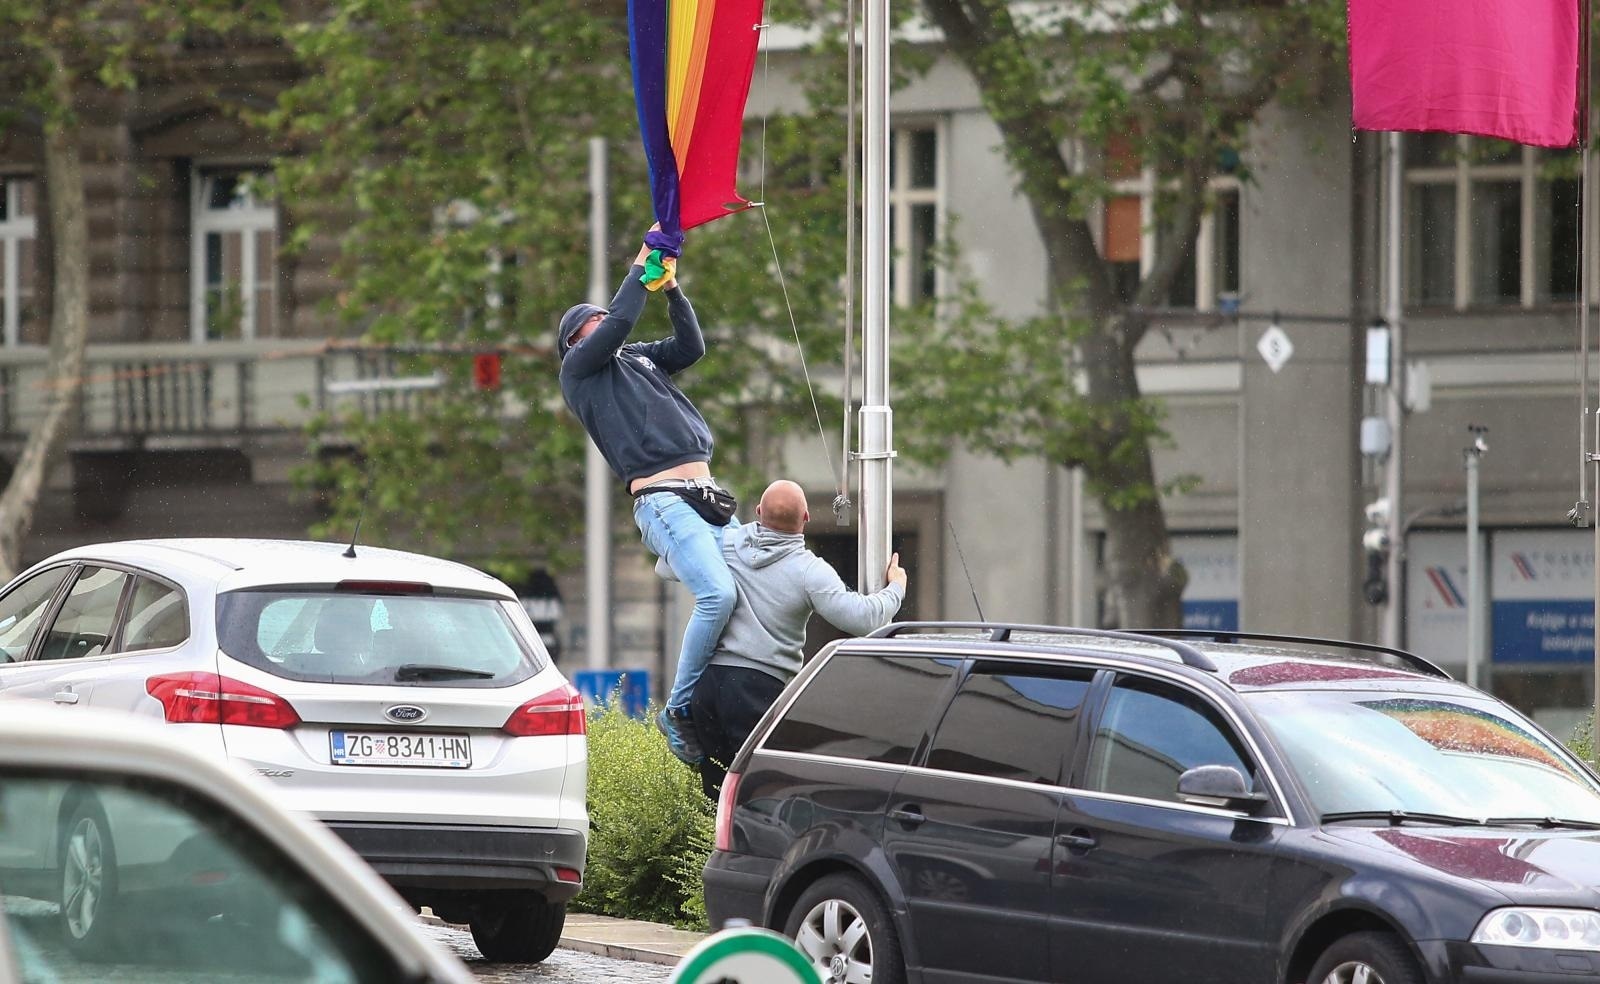 17.05.2021., Zagreb - Dvije muske osobe trgale zastavu duginih boja ispred HDLU-a.
Photo: Matija Habljak/PIXSELL